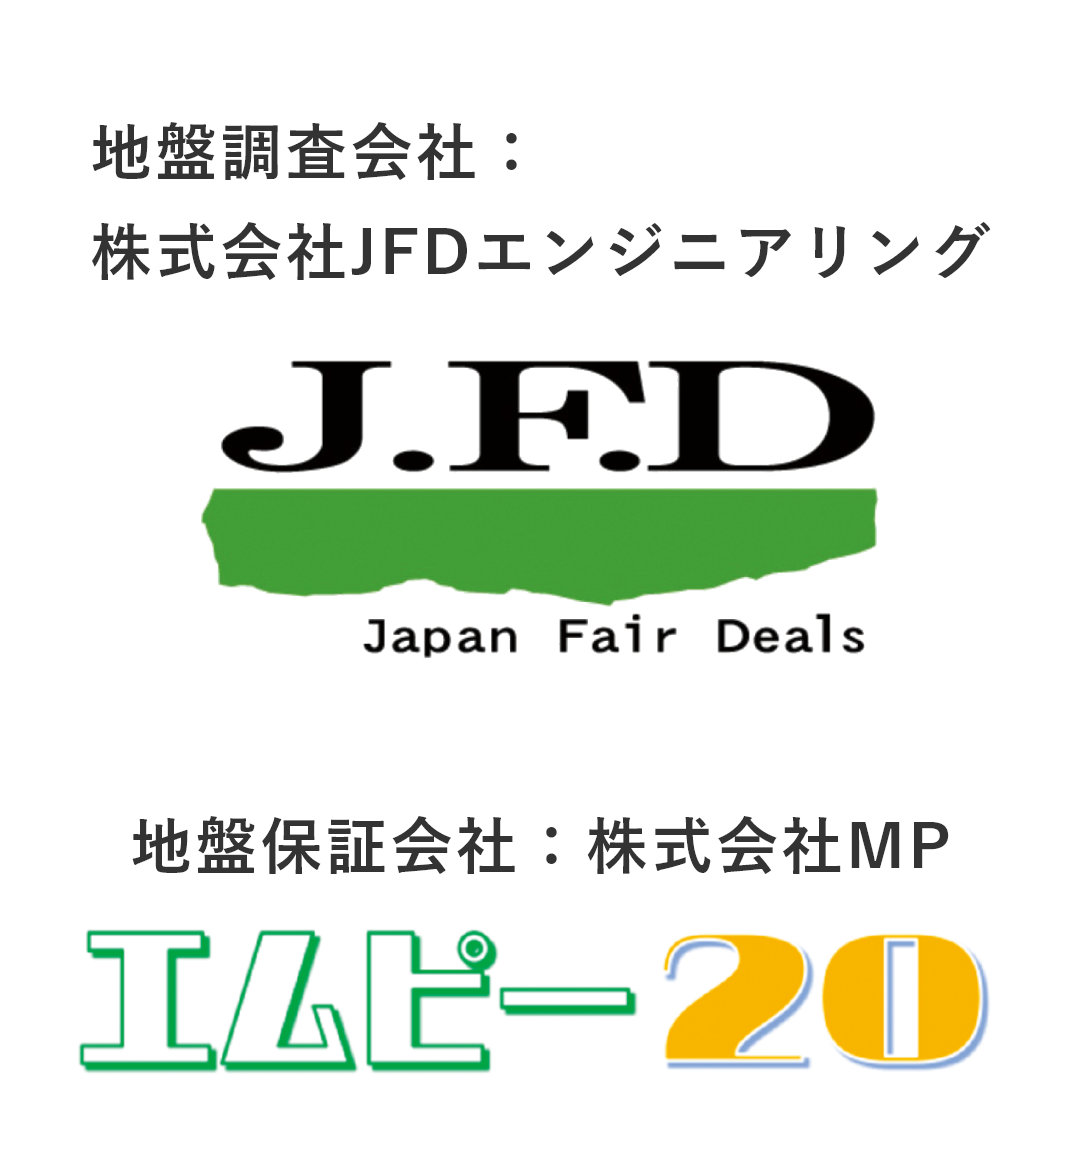 地盤調査会社：株式会社JFDエンジニアリング、地盤保証会社：株式会社MPのロゴ